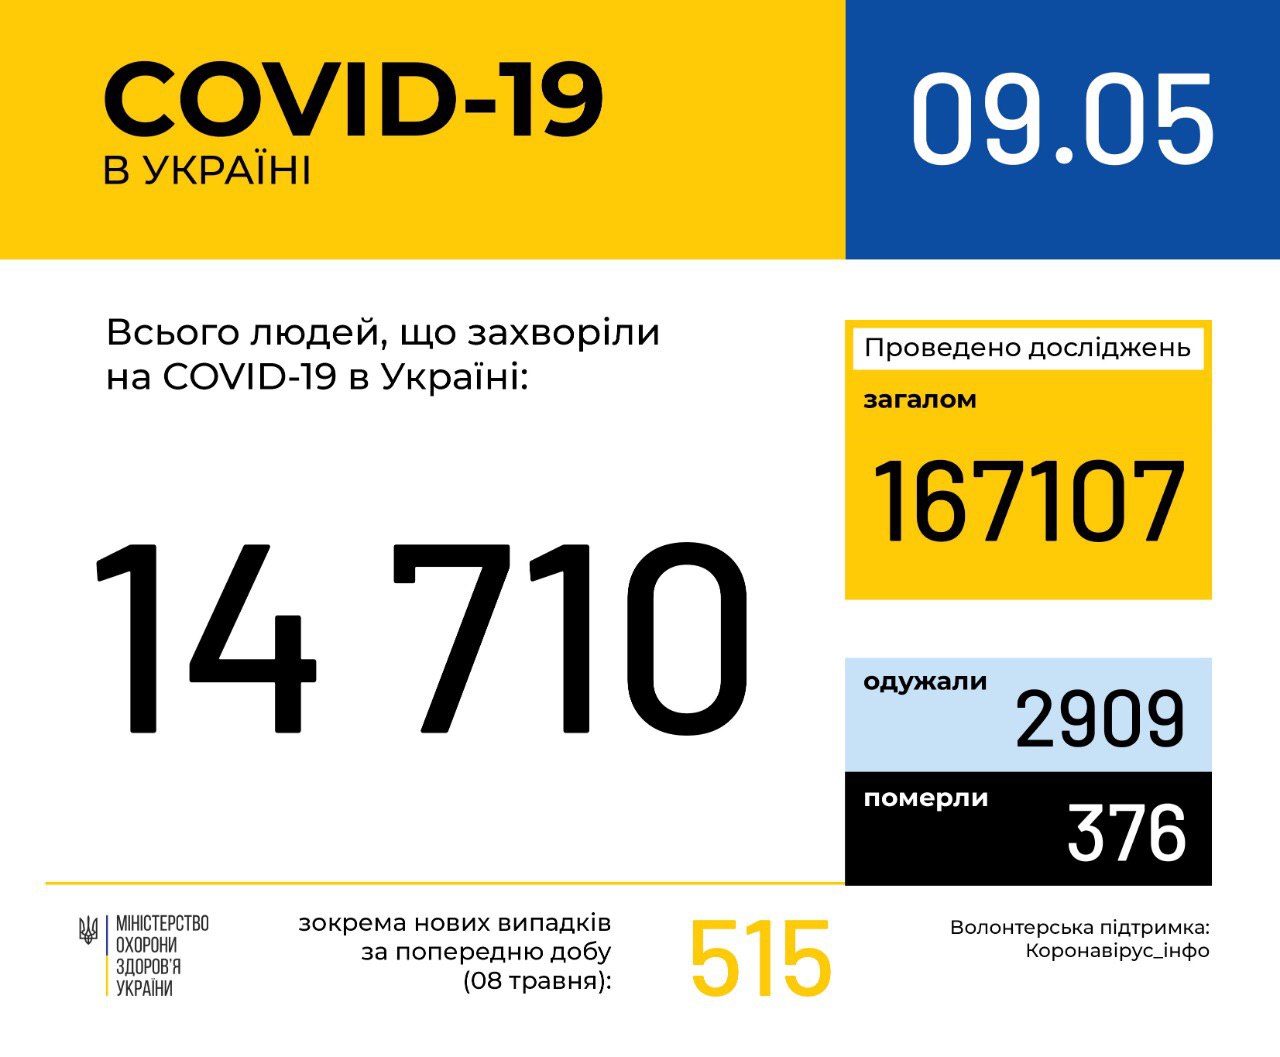 В Україні зафіксовано 14710 випадків коронавірусної хвороби COVID-19, - МОЗ